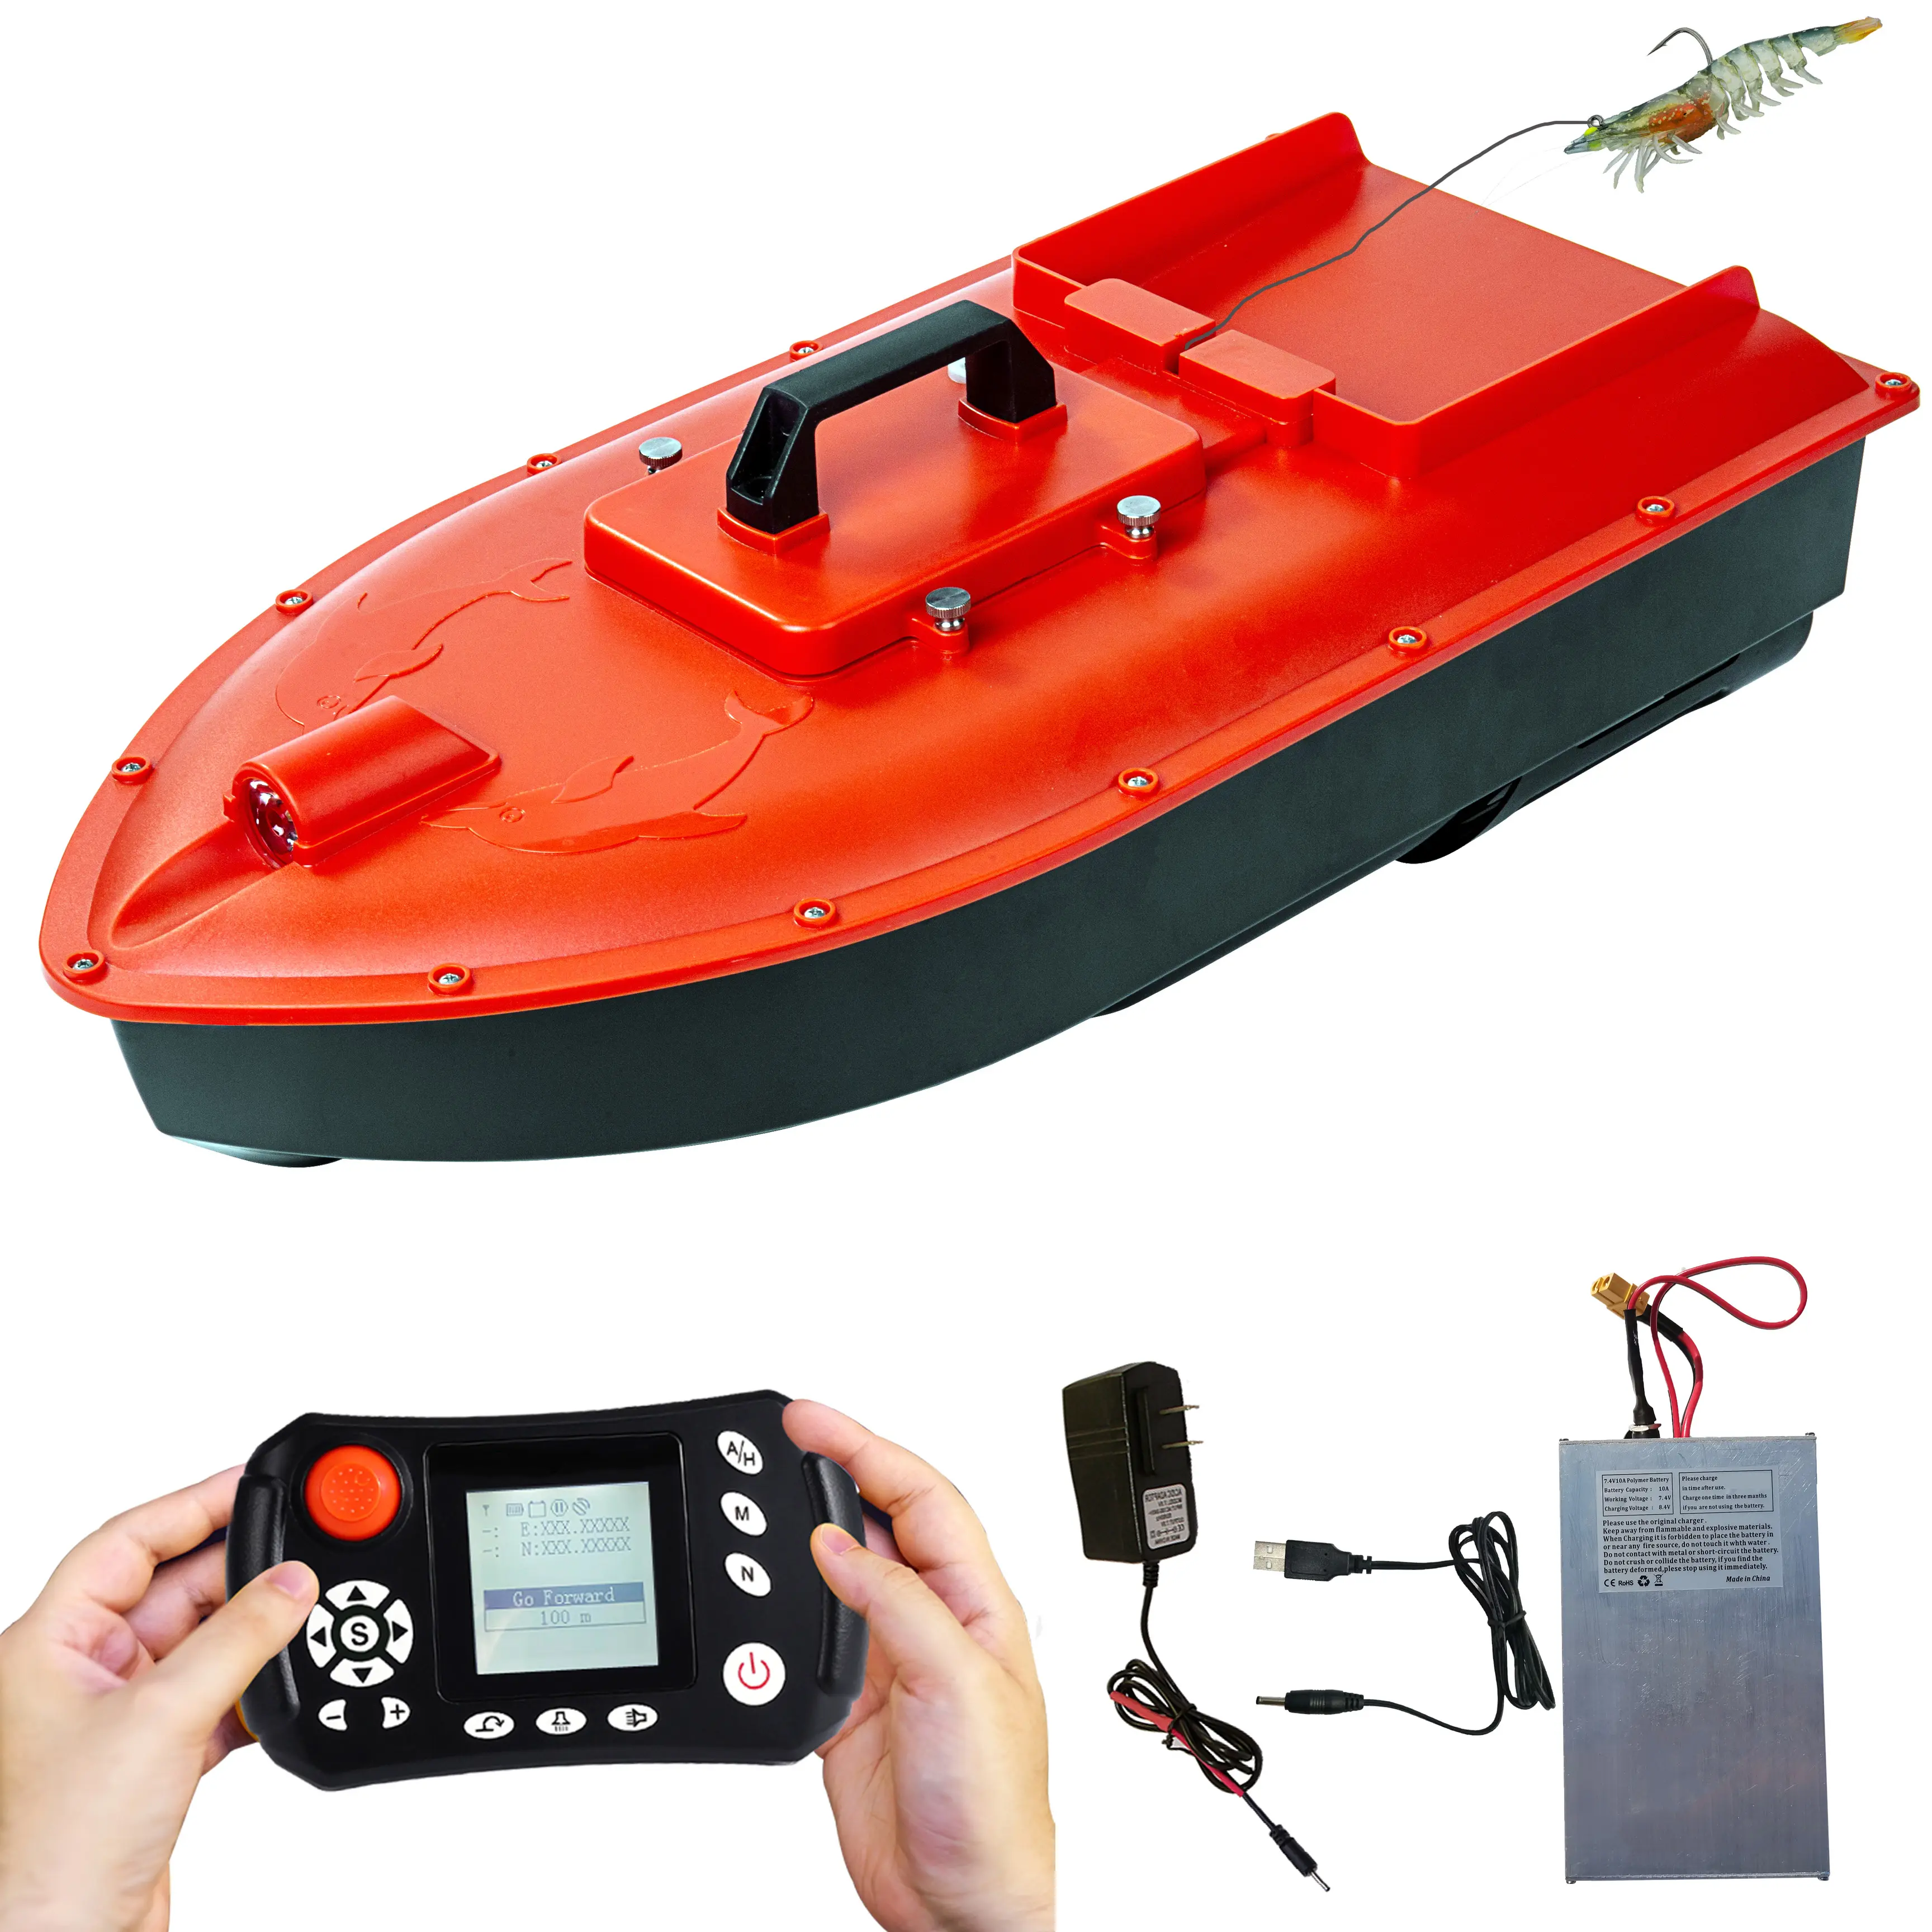 Jabo Dolphin высокоскоростная радиоуправляемая Морская рыбалка сёрфер приманка лодка для пляжной рыбалки с водонепроницаемым корпусом, GPS автоматический возврат